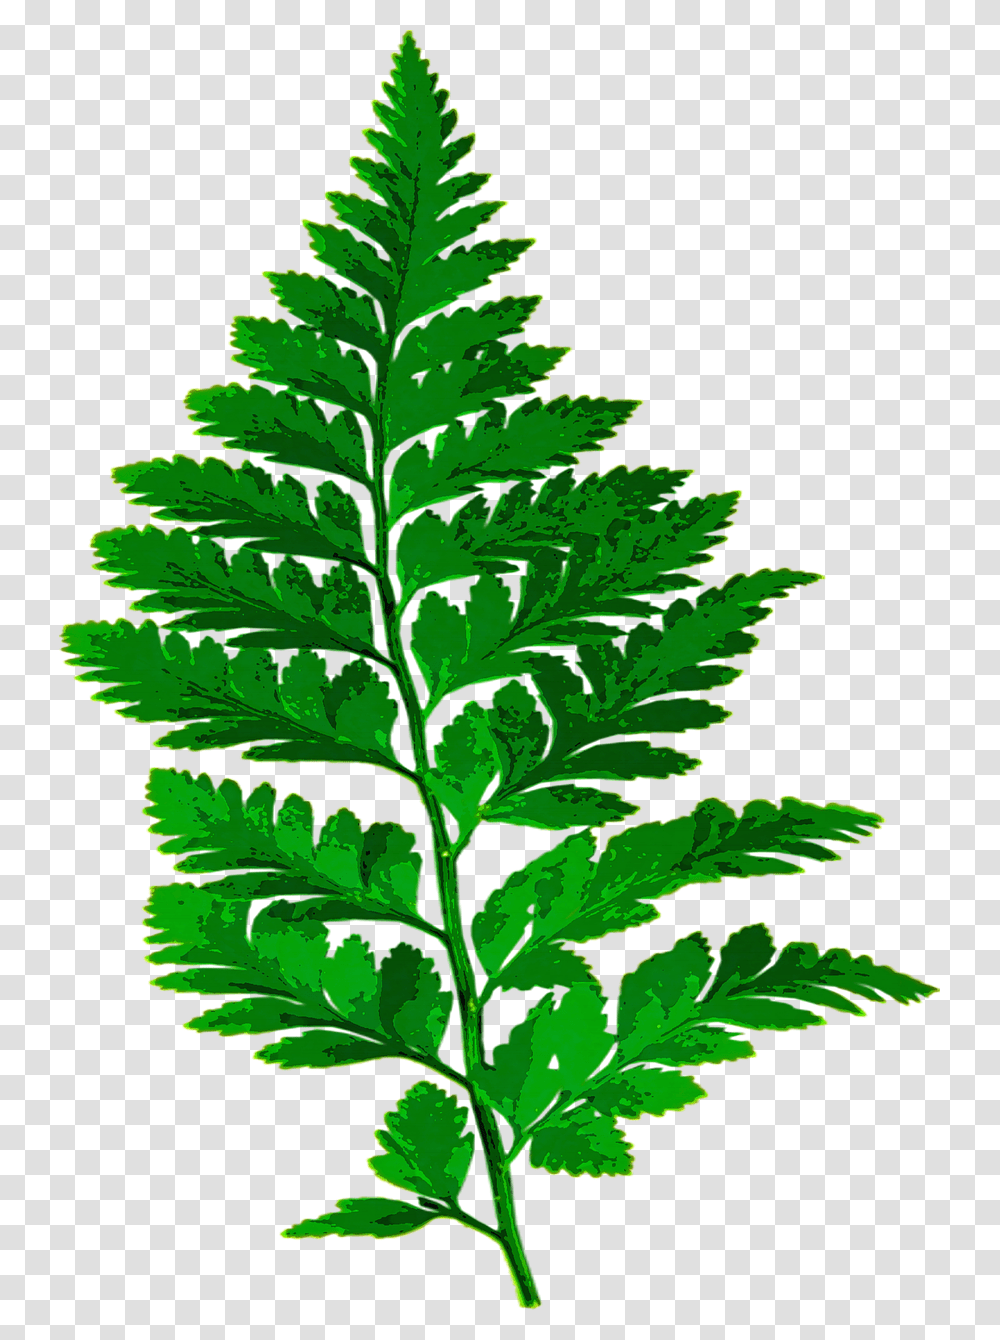 Fern Leaf Nature Green Leaves Fern Leaf Silhouette, Plant, Vase, Jar, Pottery Transparent Png